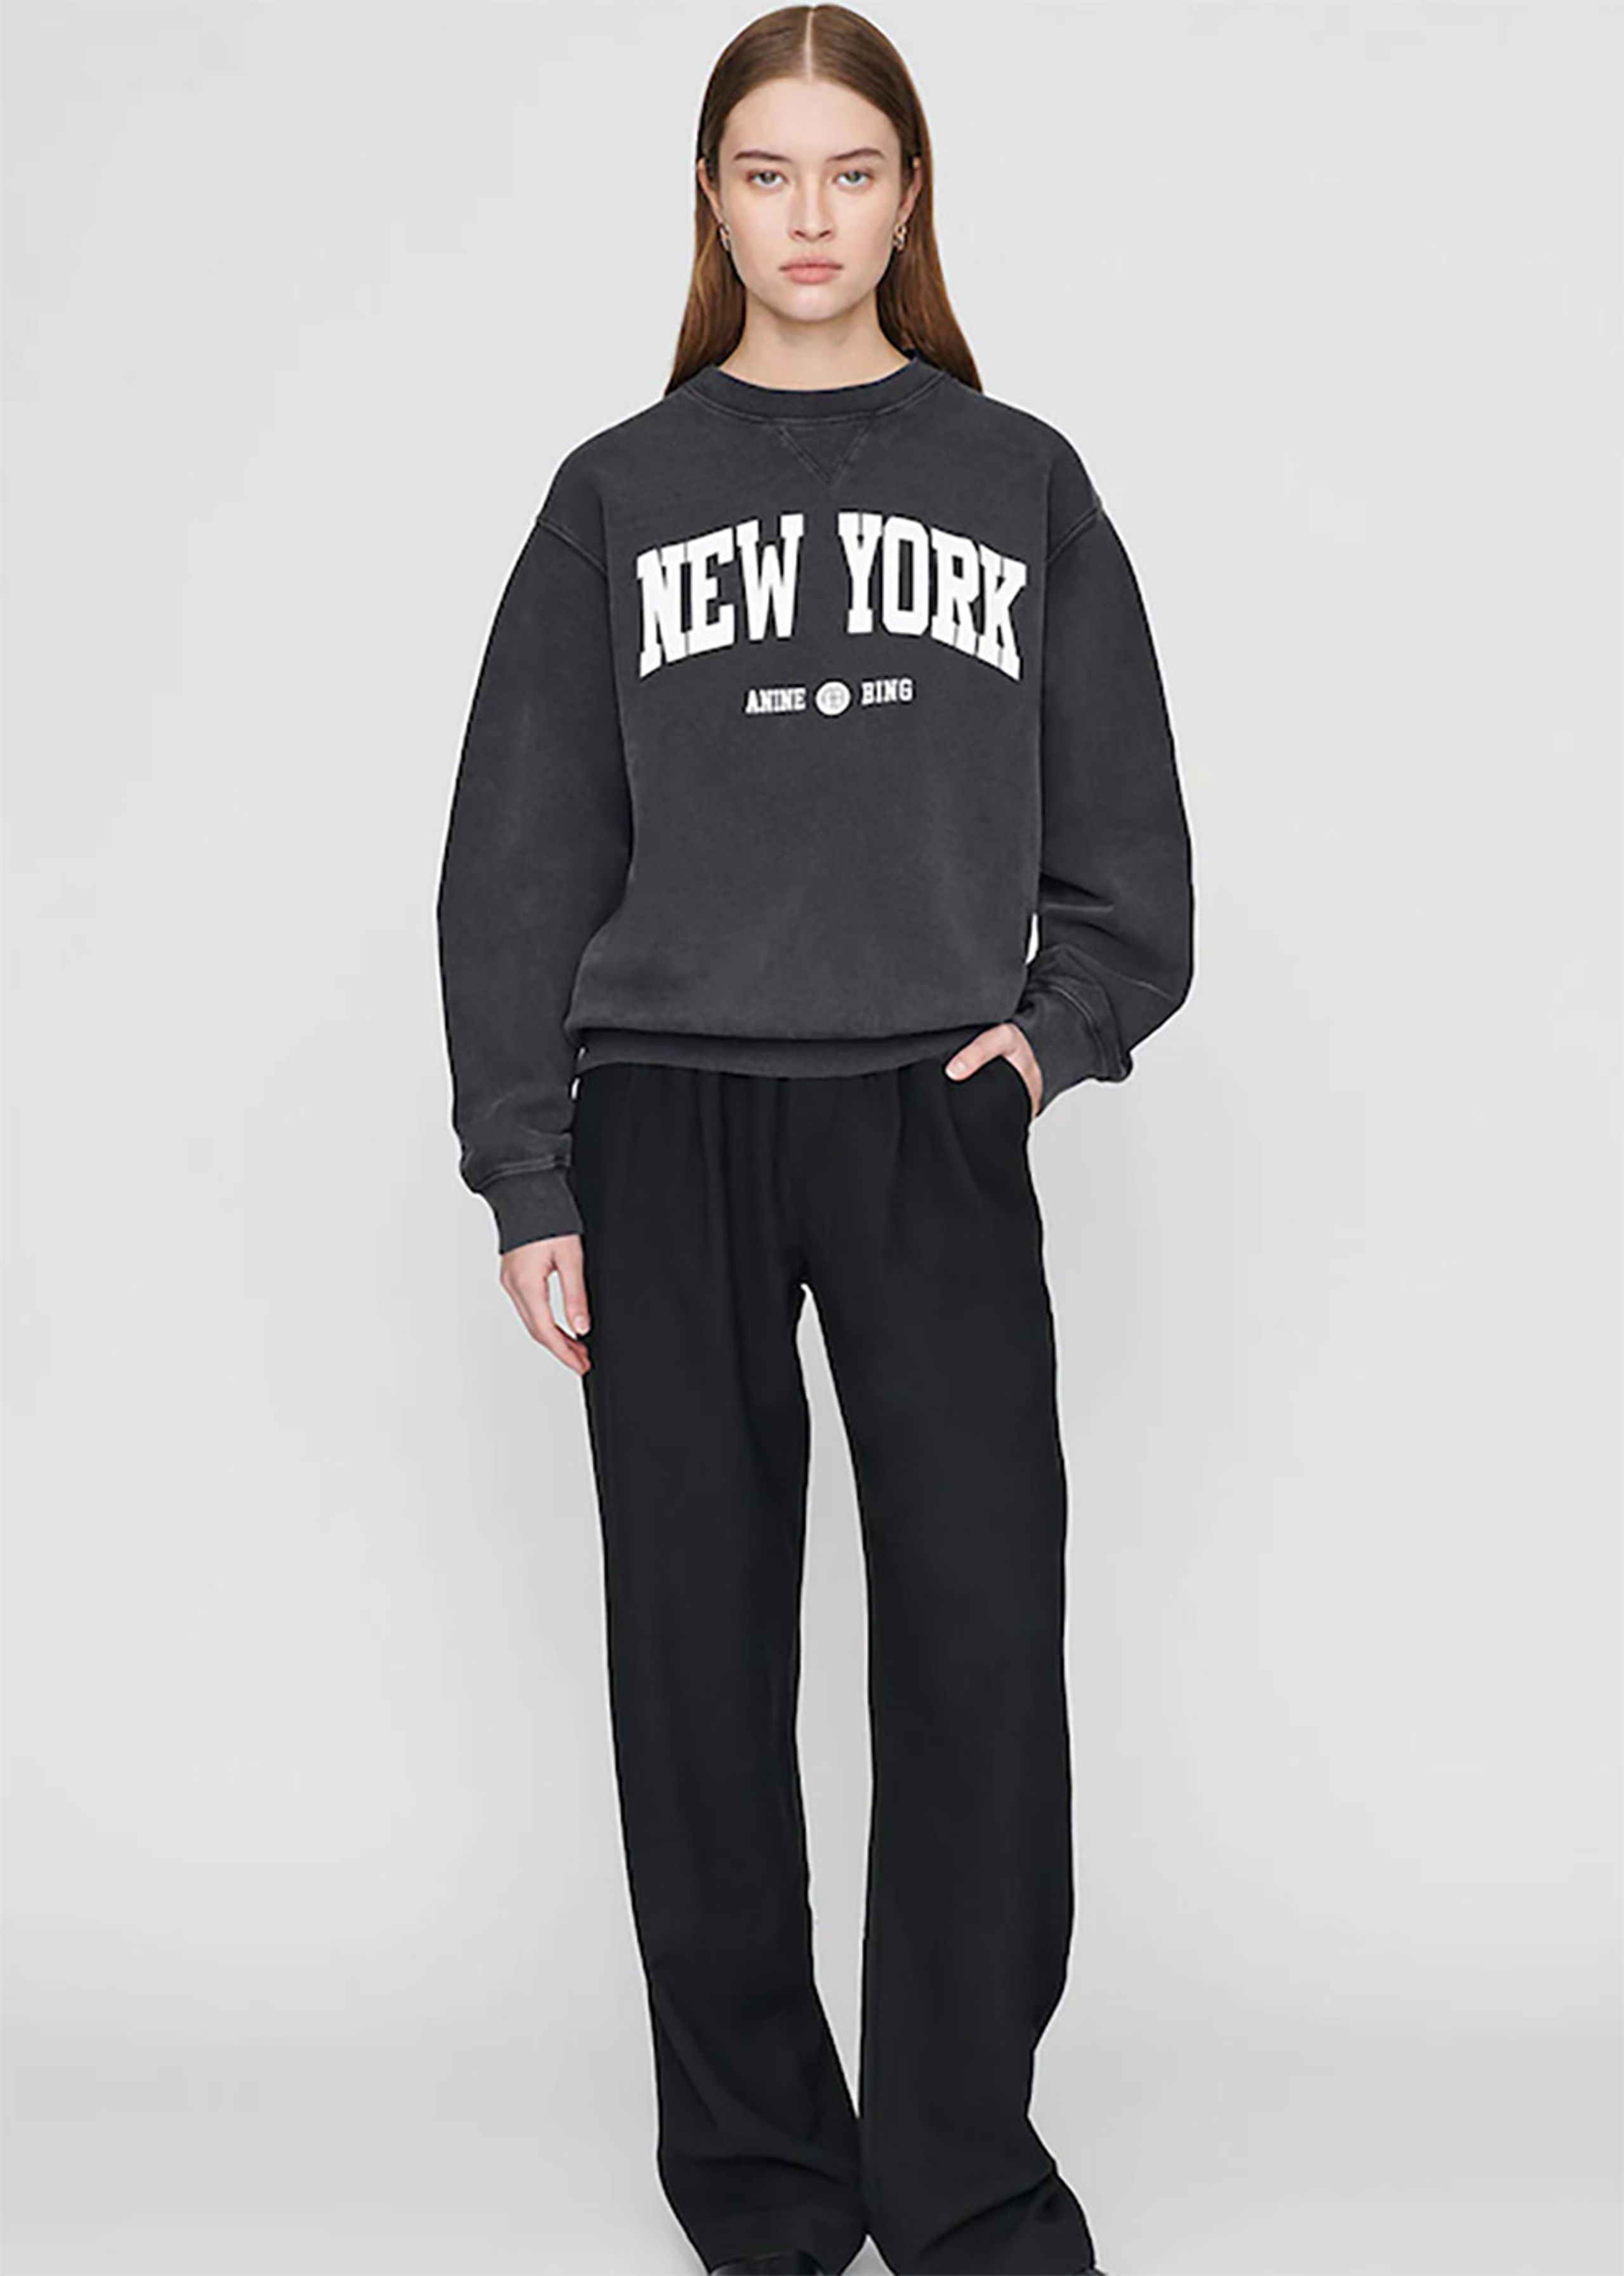 Anine Bing - Sweatshirt - Ramona  - Washed Black x New York